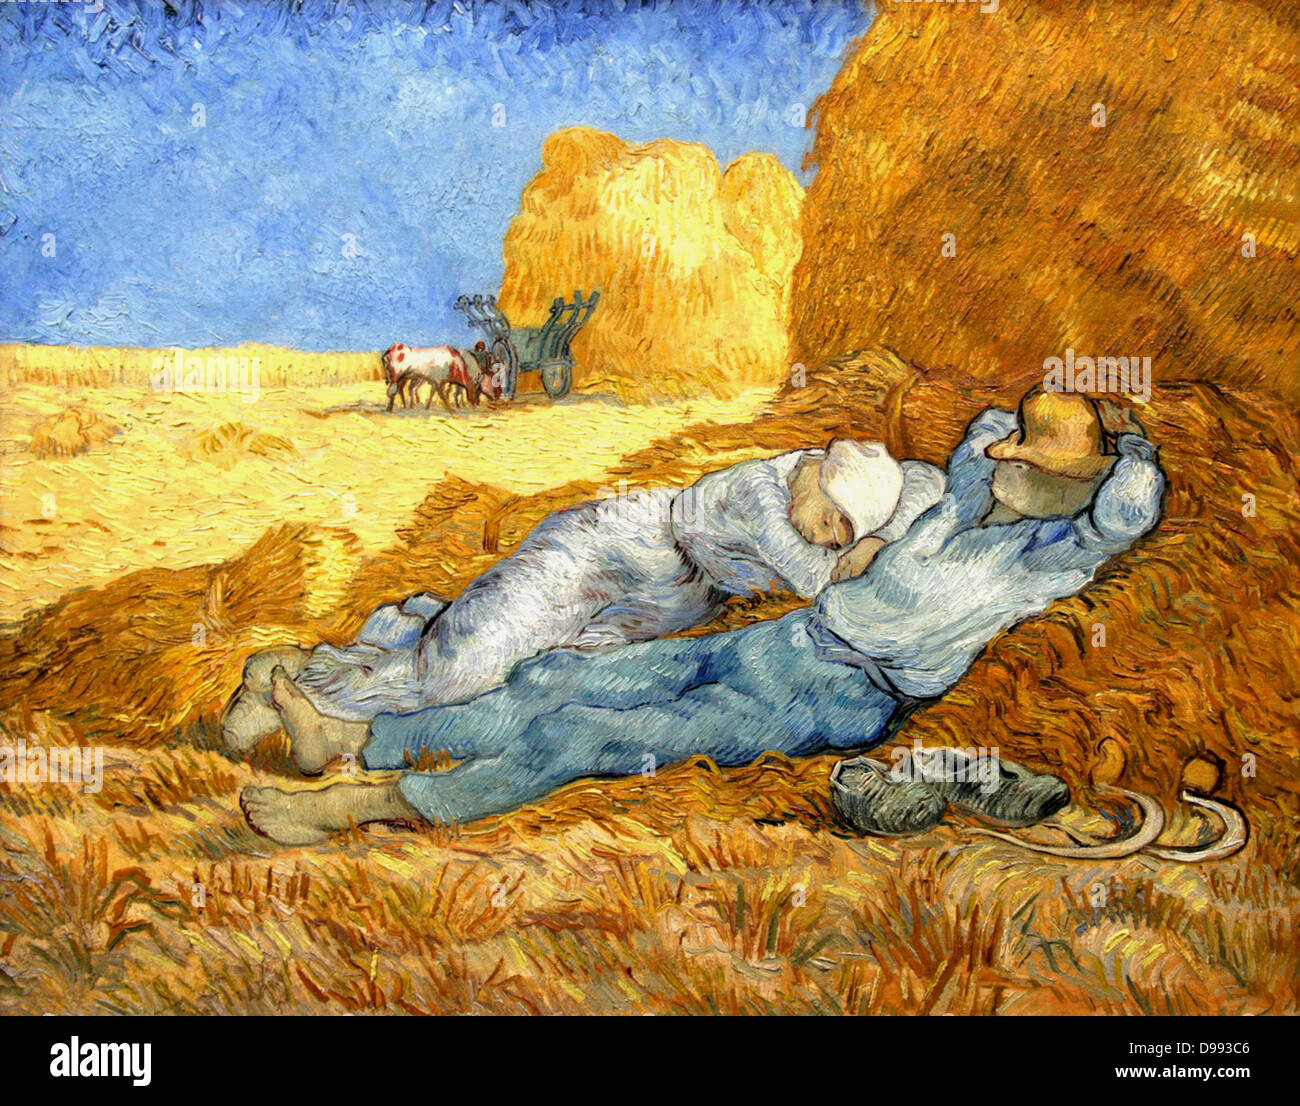 Vincent Van Gogh (1853 - 1890), peintre post-impressionniste hollandais. Van Gogh souffrait de maladie mentale et est mort d'une blessure auto-infligée. La meridienne 'ferme' couple est de prendre une sieste en milieu de journée à l'ombre d'une botte de Décembre 1 peint. Banque D'Images